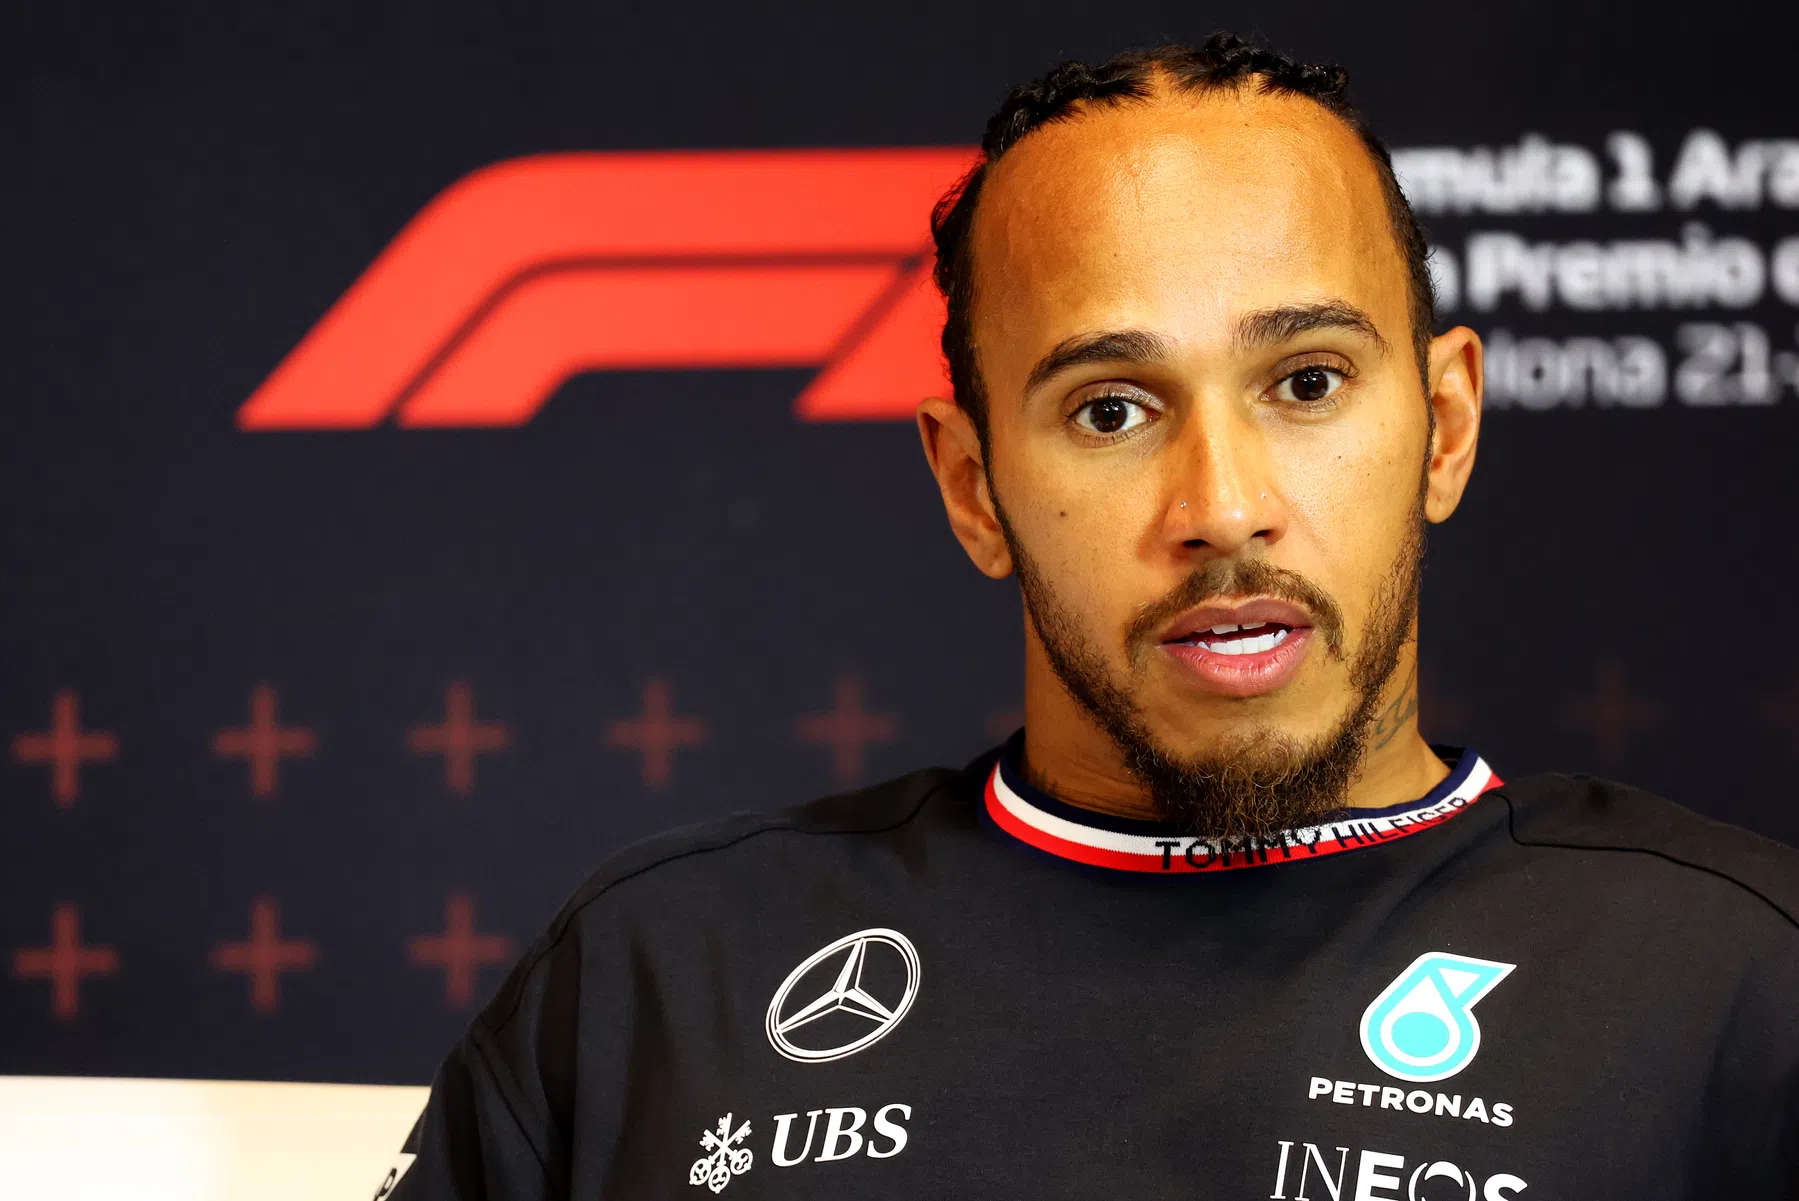 Stewards oordeel aan over Lewis Hamilton en Mercedes na Q3-incident